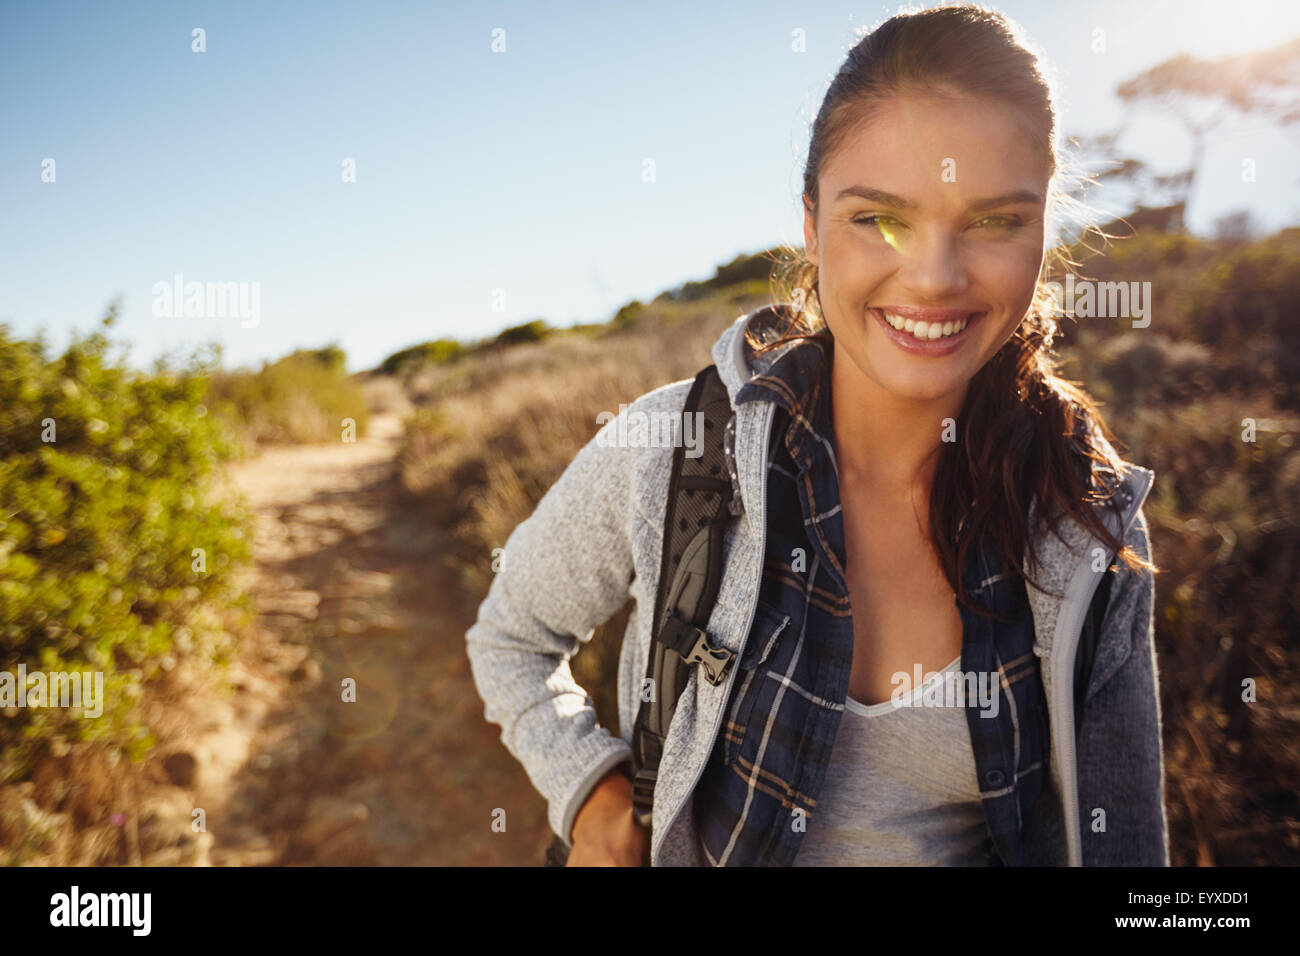 Randonnée randonneur dans la nature. Young woman smiling durant la randonnée. Portrait modèle féminin à l'extérieur sur la randonnée à la recherche à l'appareil photo. Profitant de somme Banque D'Images